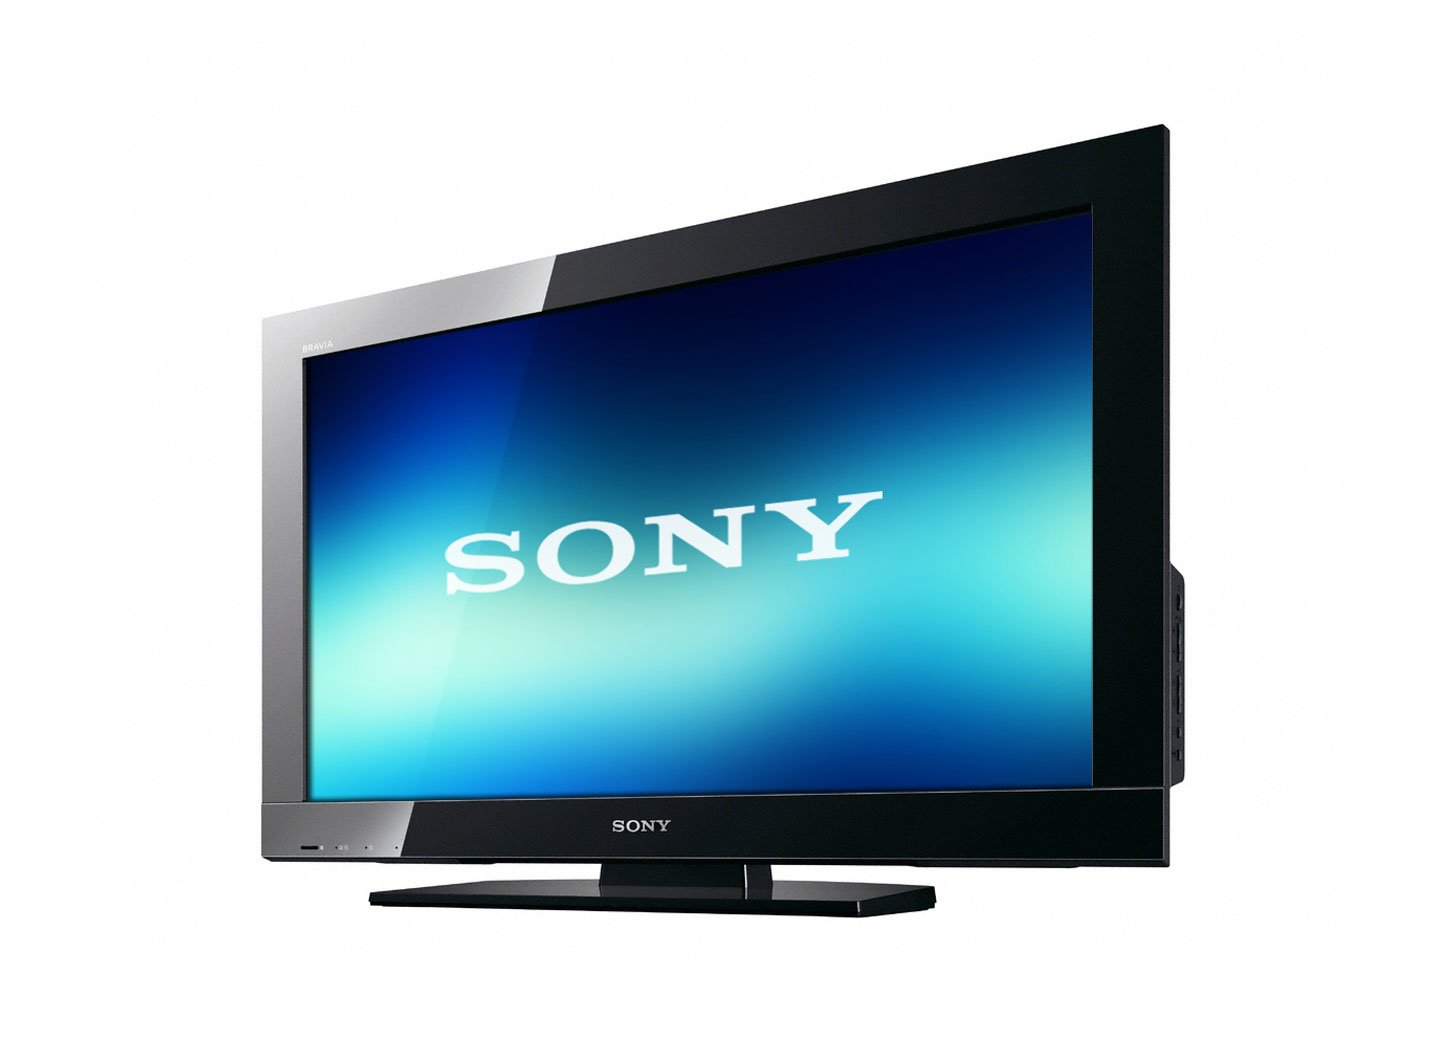 Tivi của Sony nổi tiếng với thiết kế đơn giản mà tinh tế.